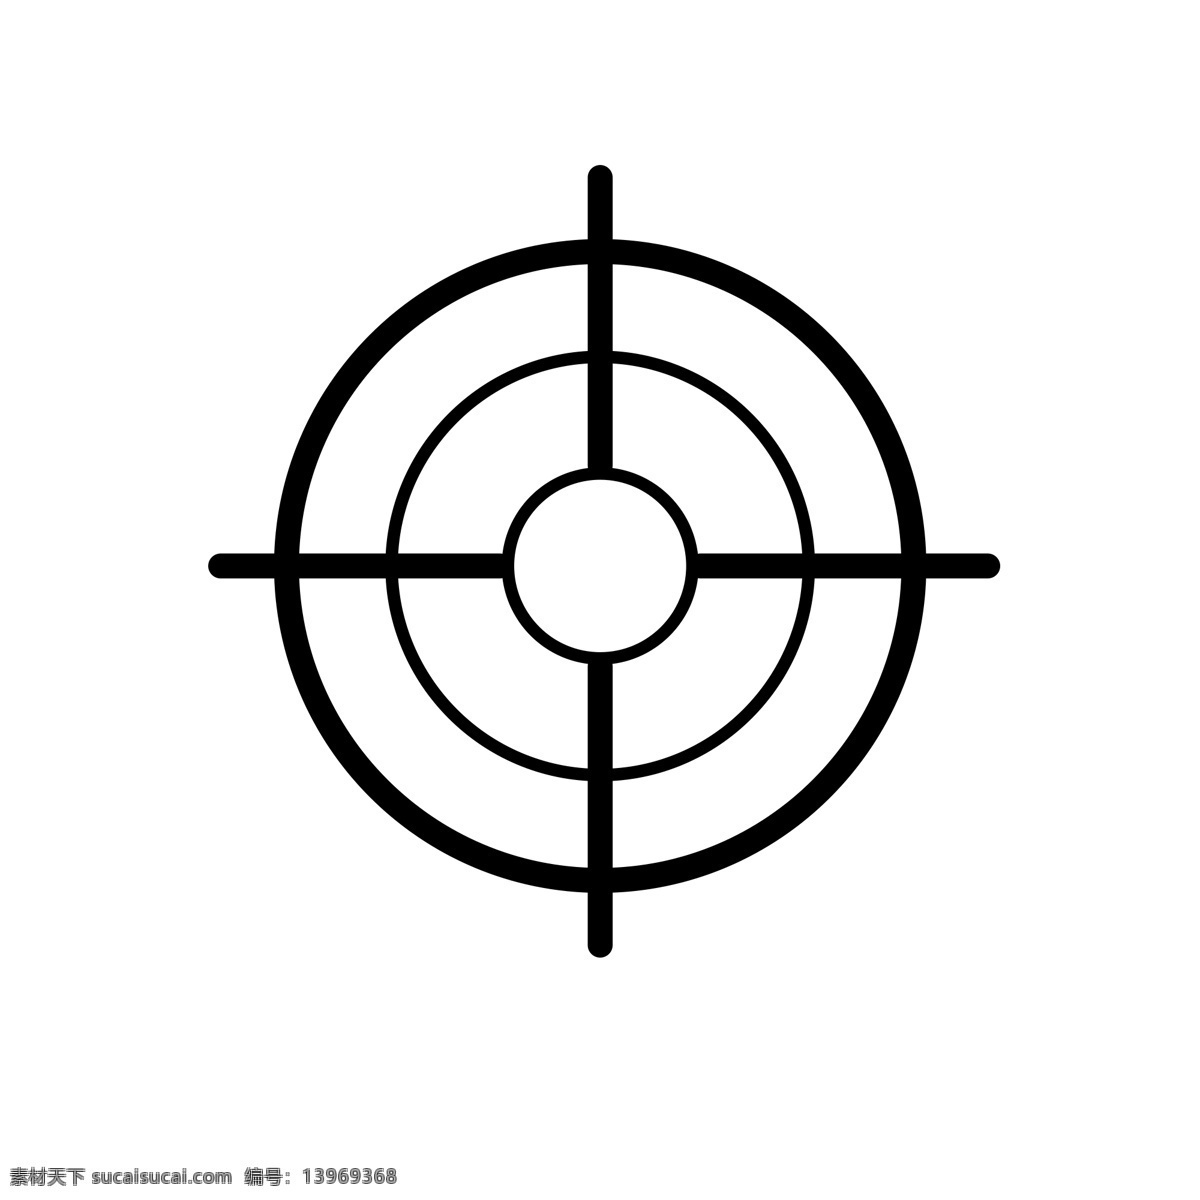 扁平化瞄准镜 目标 瞄准器 扁平化ui ui图标 手机图标 界面ui 网页ui h5图标